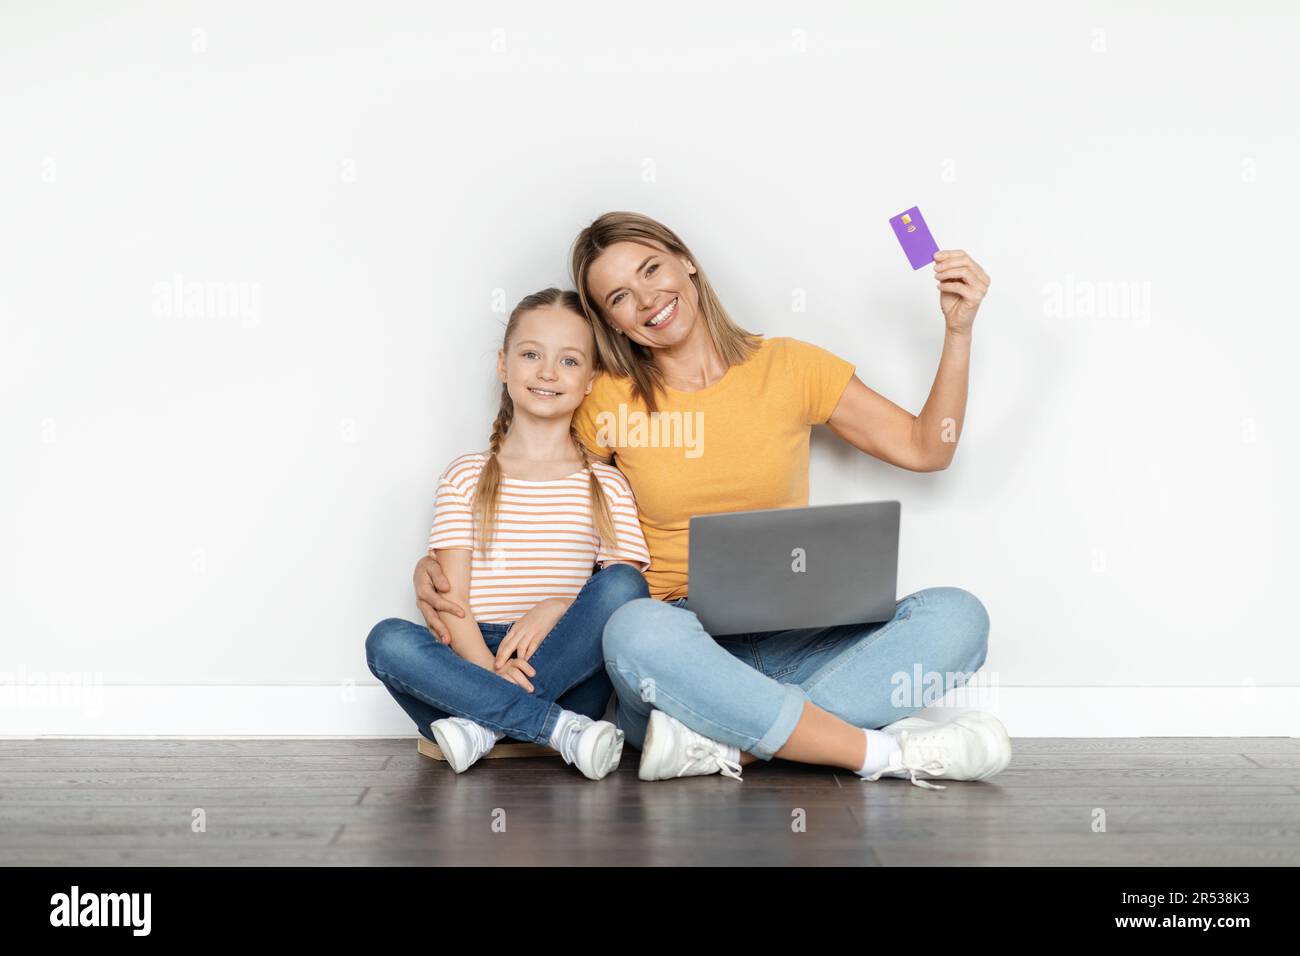 Paiements faciles. Jolie petite fille et mère tenant un ordinateur portable et une carte de crédit Banque D'Images